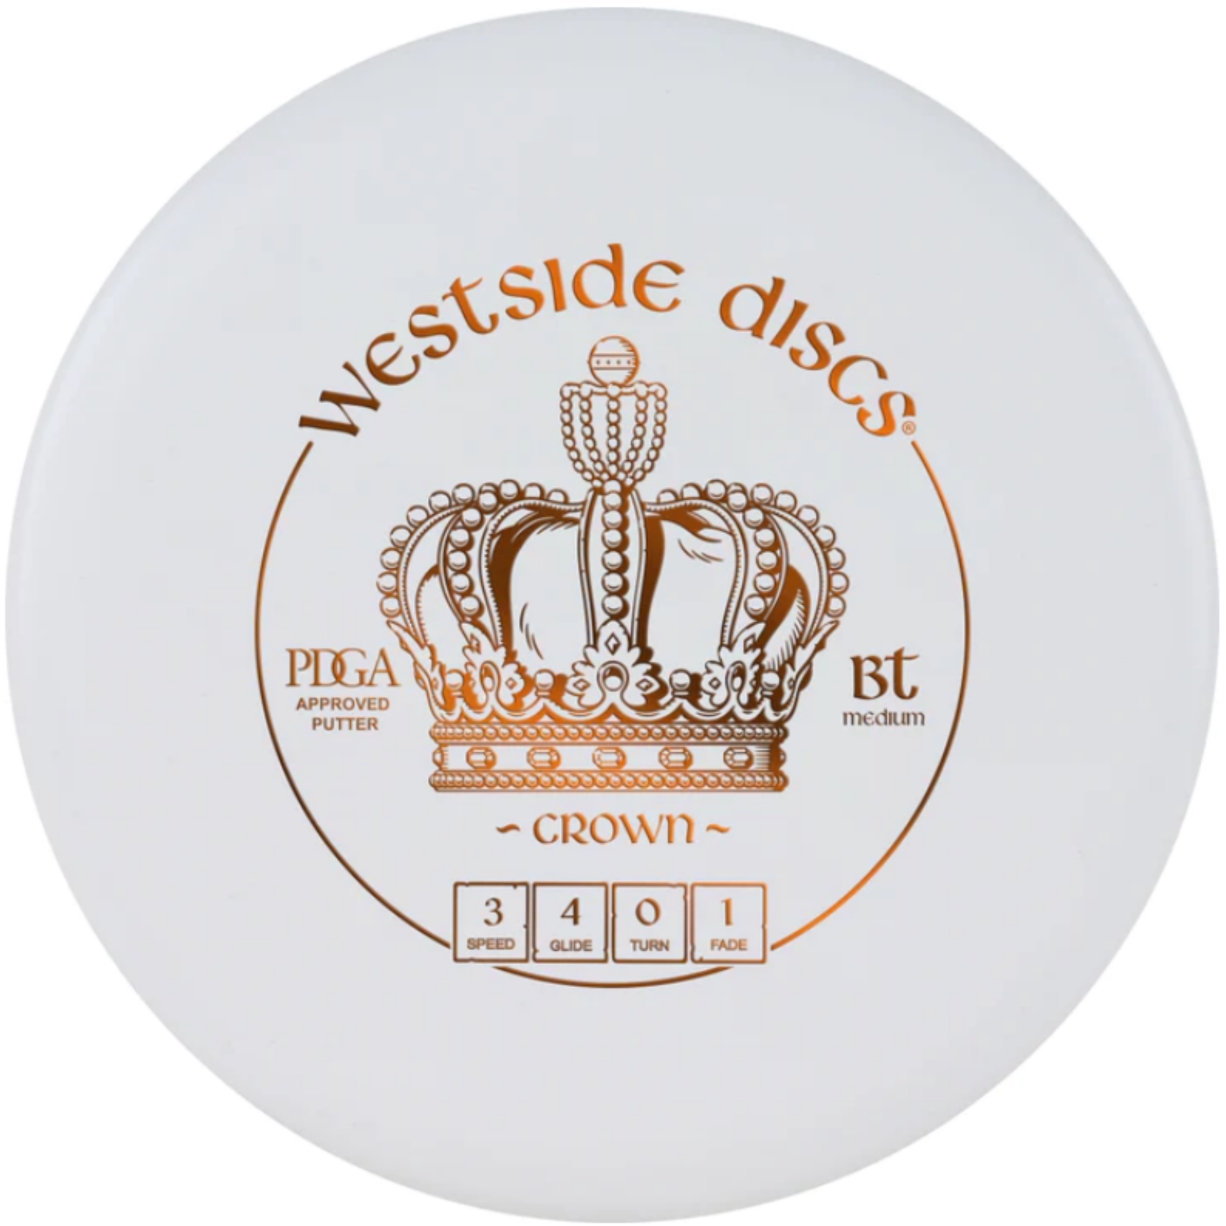 Westside Discs – BT Crown White (Putter) | Discgolf